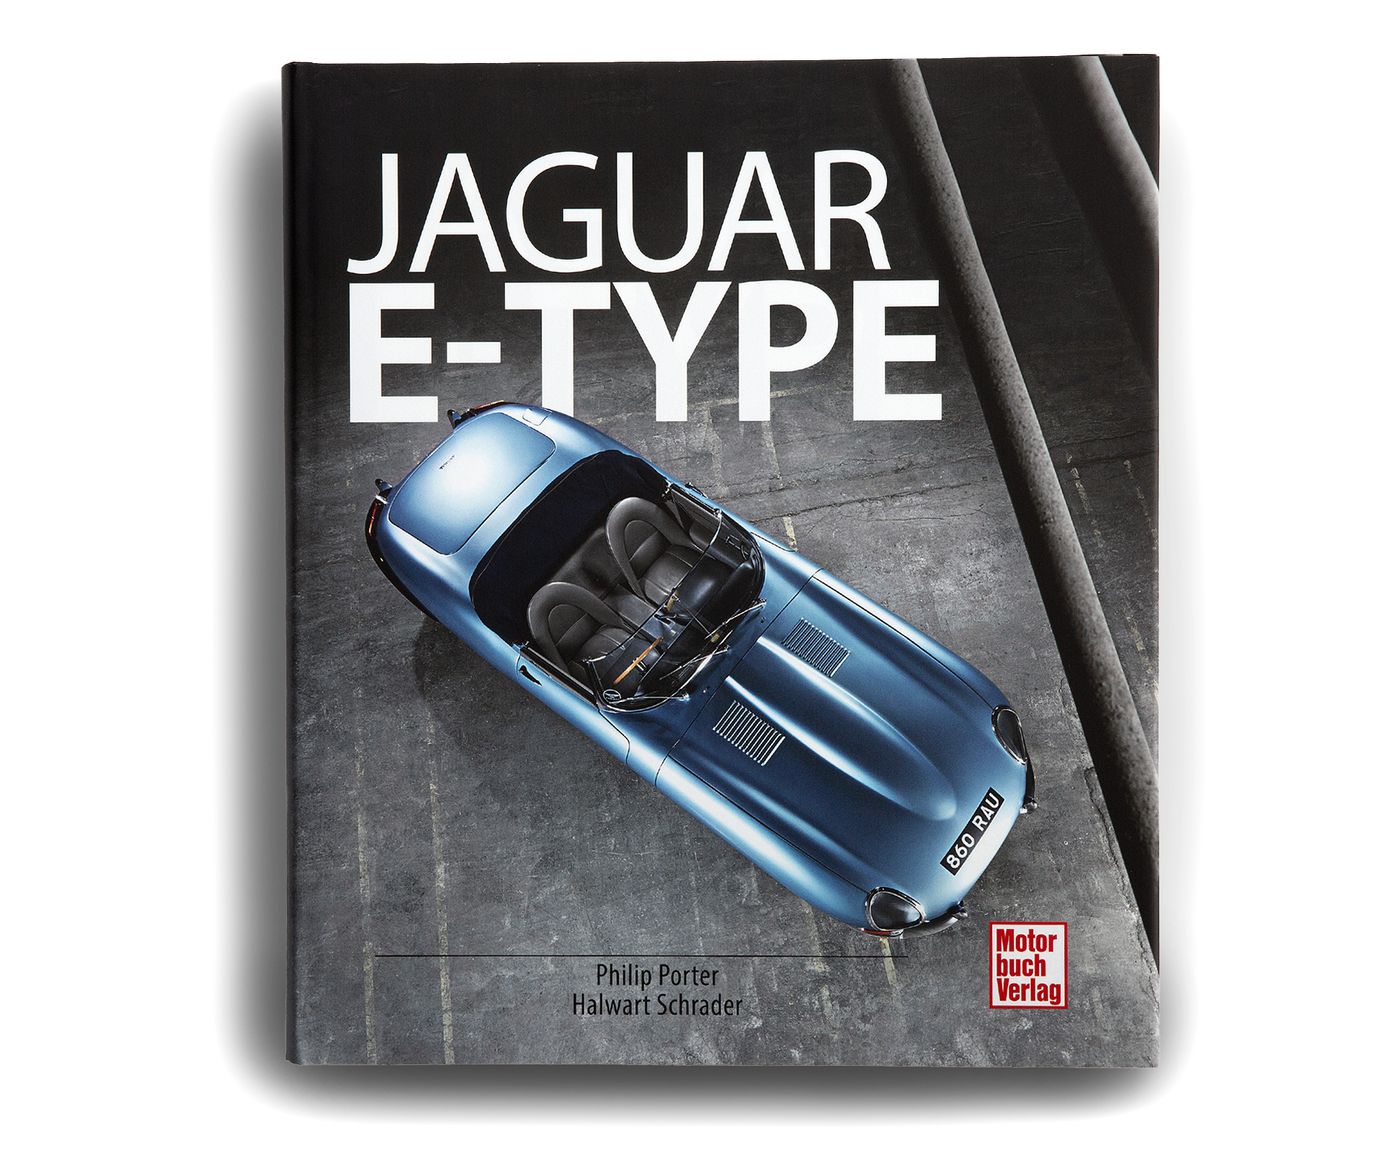 Jaguar E-Type
Jaguar E-Type
Jaguar Type 'E'
Jaguar E-Type
Jaguar